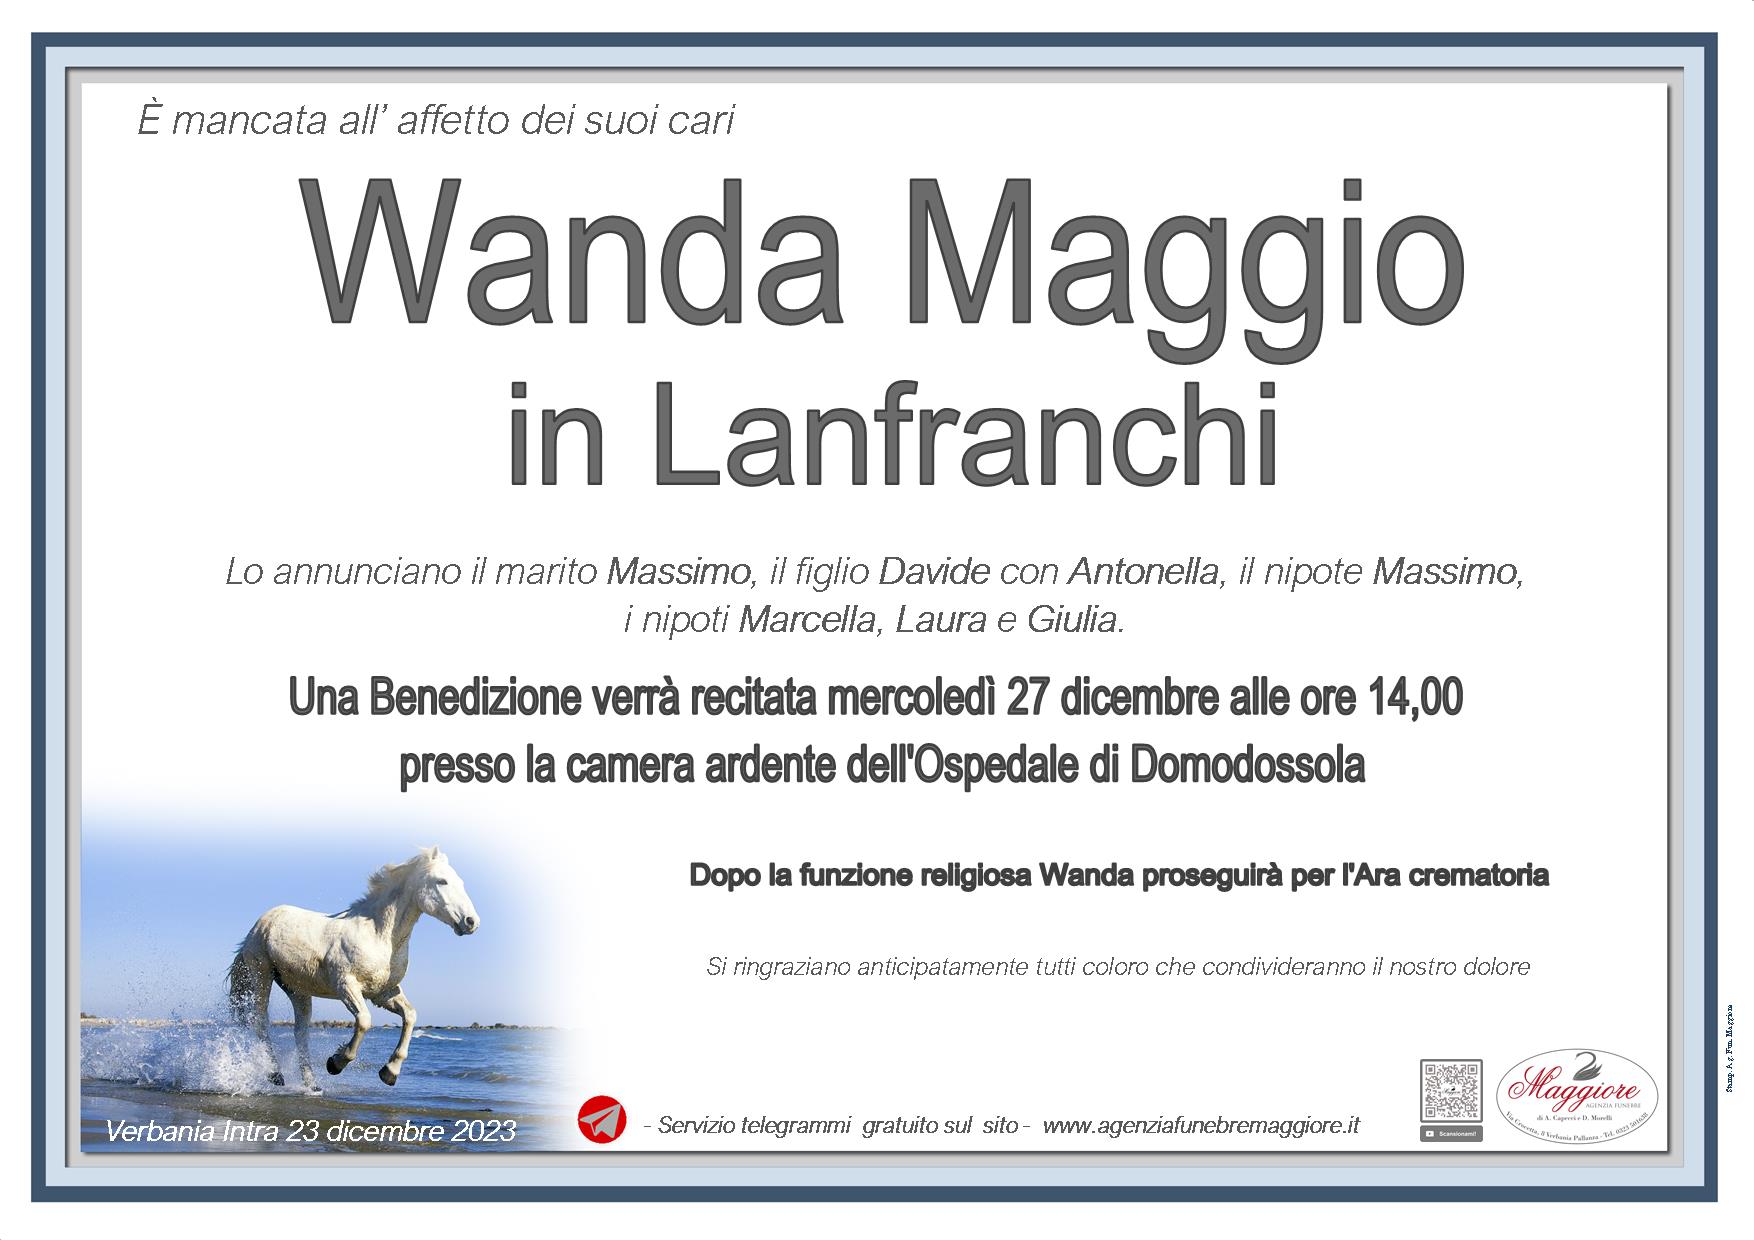 Wanda Maggio in Lanfranchi